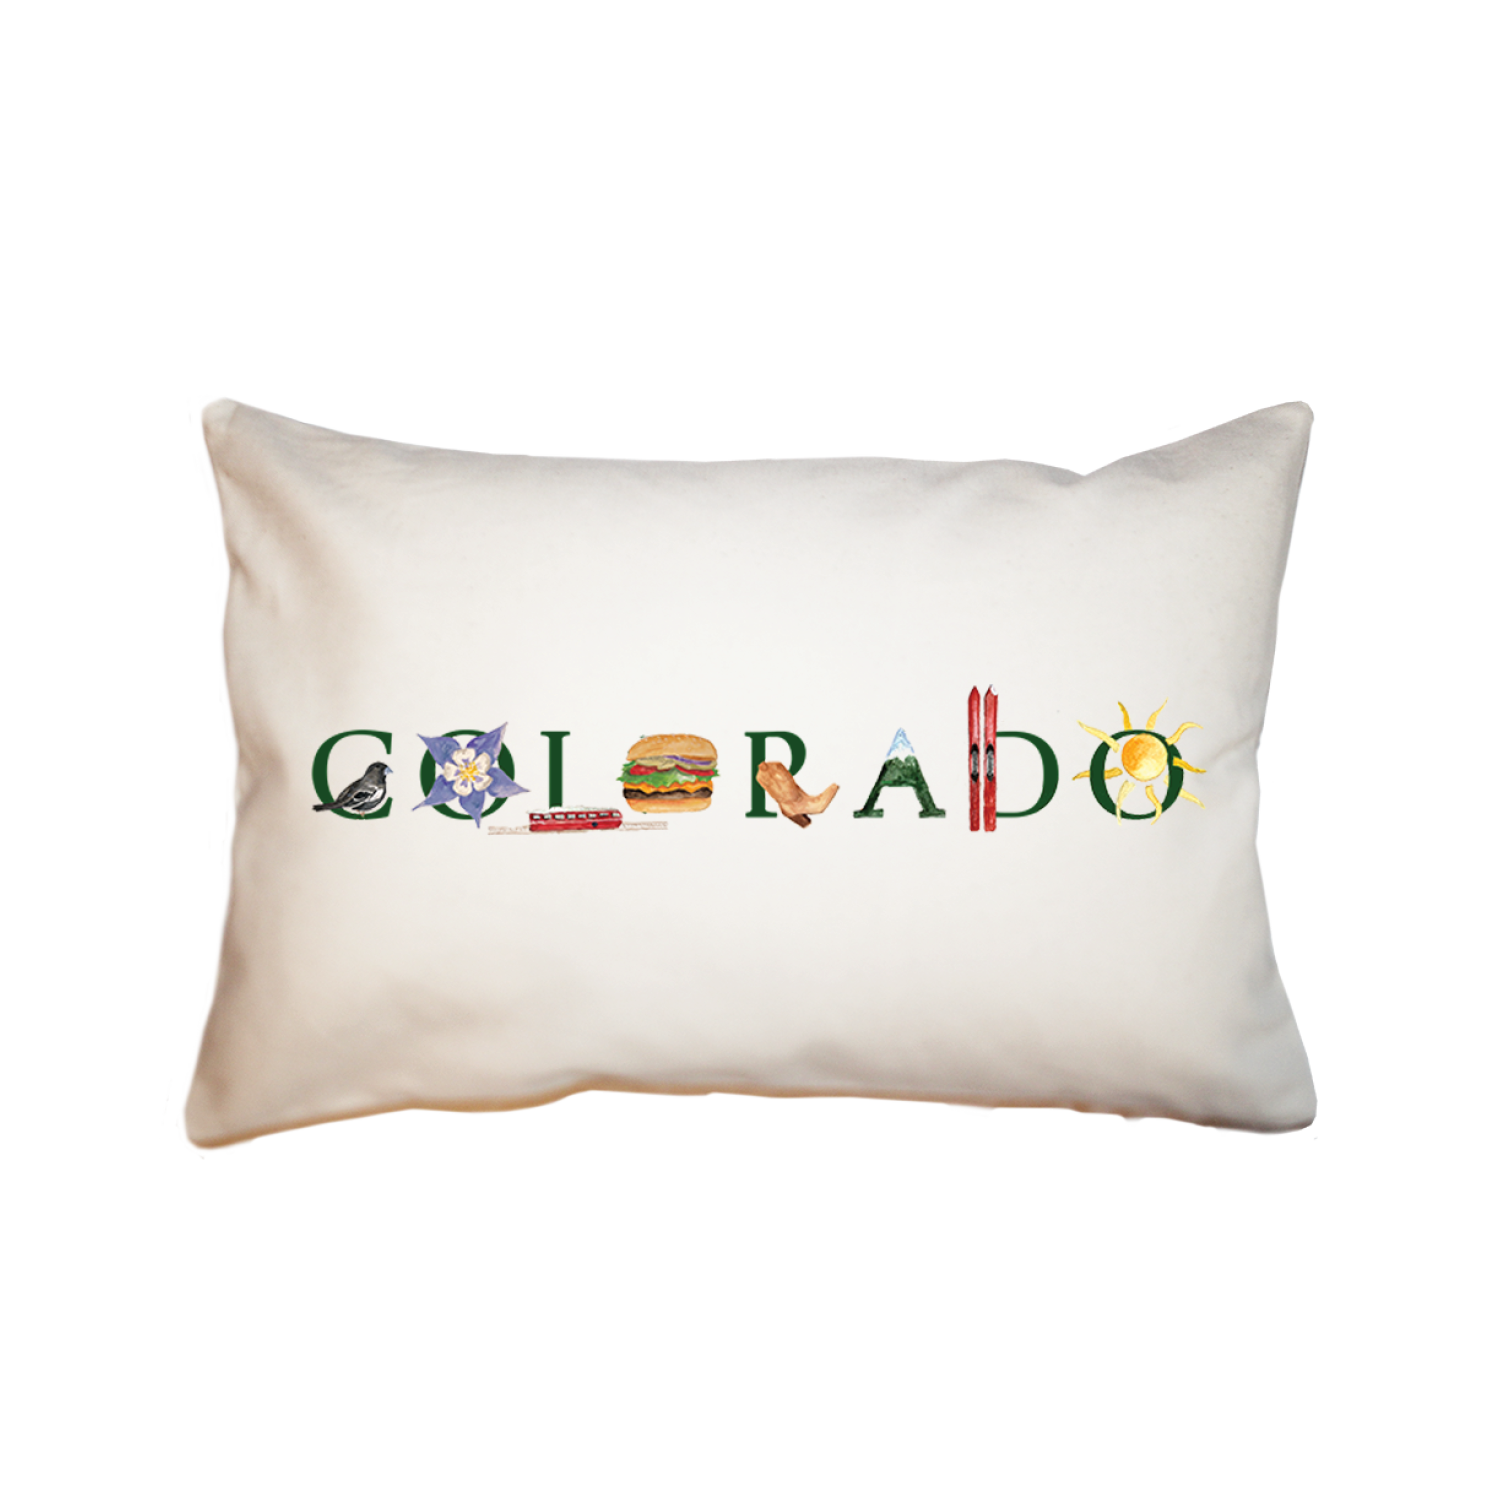 Colorado large rectangle pillow